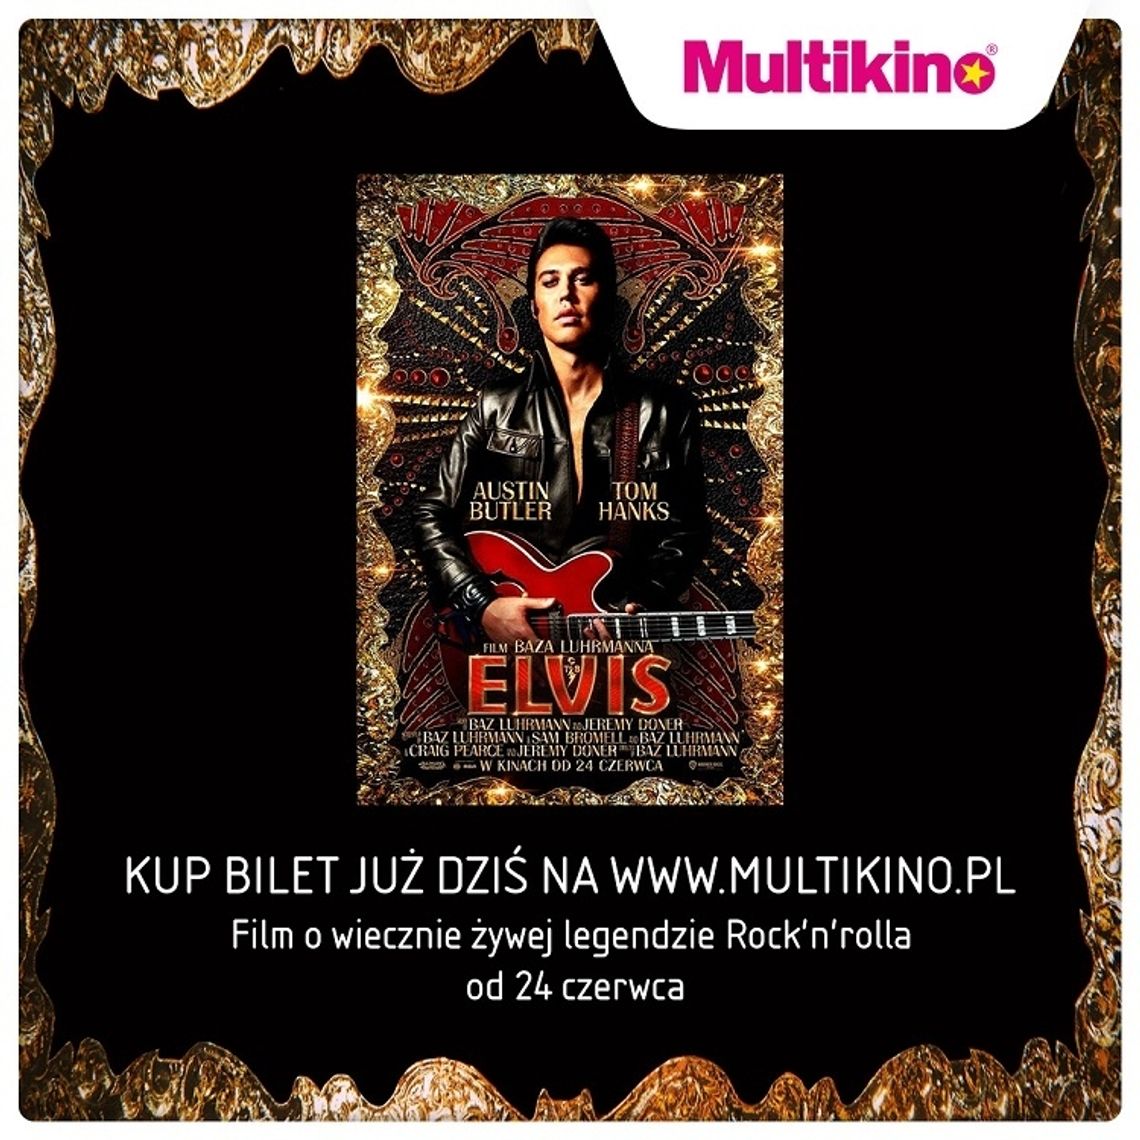 Już dziś kupisz w Multikinie bilety na film „Elvis”!